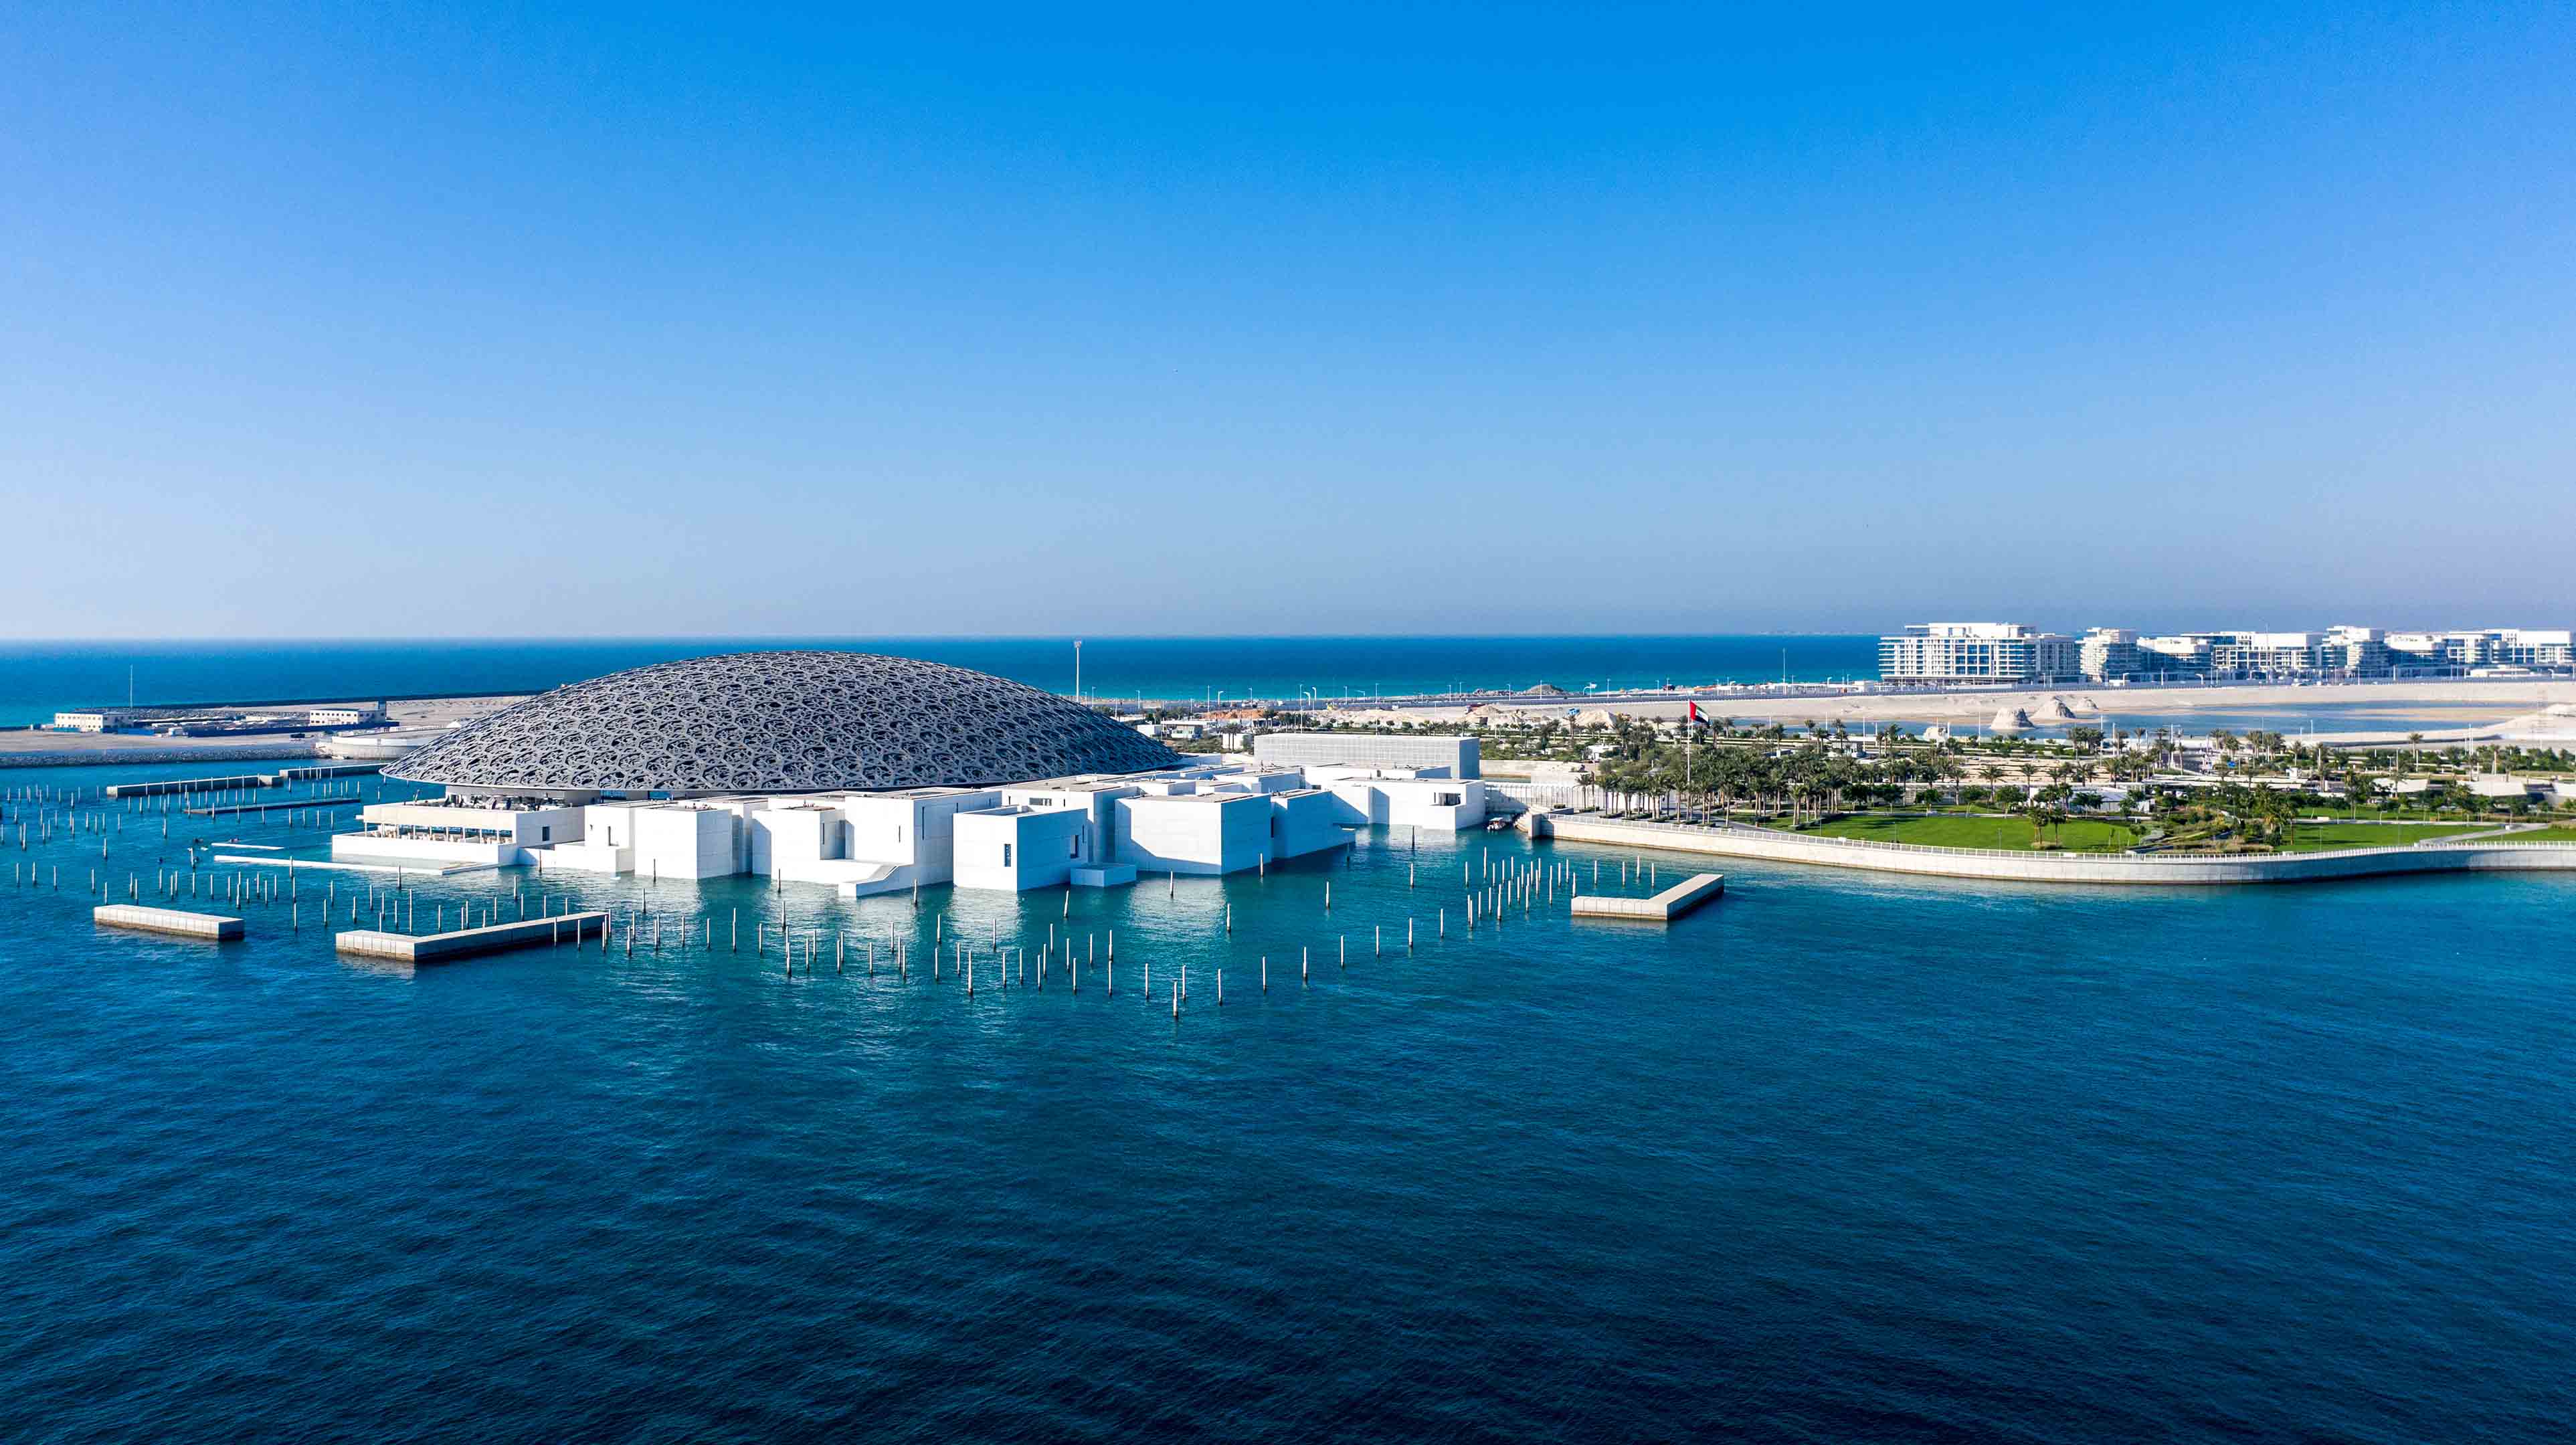 Blick auf den Louvre Abu Dhabi vom Meer aus